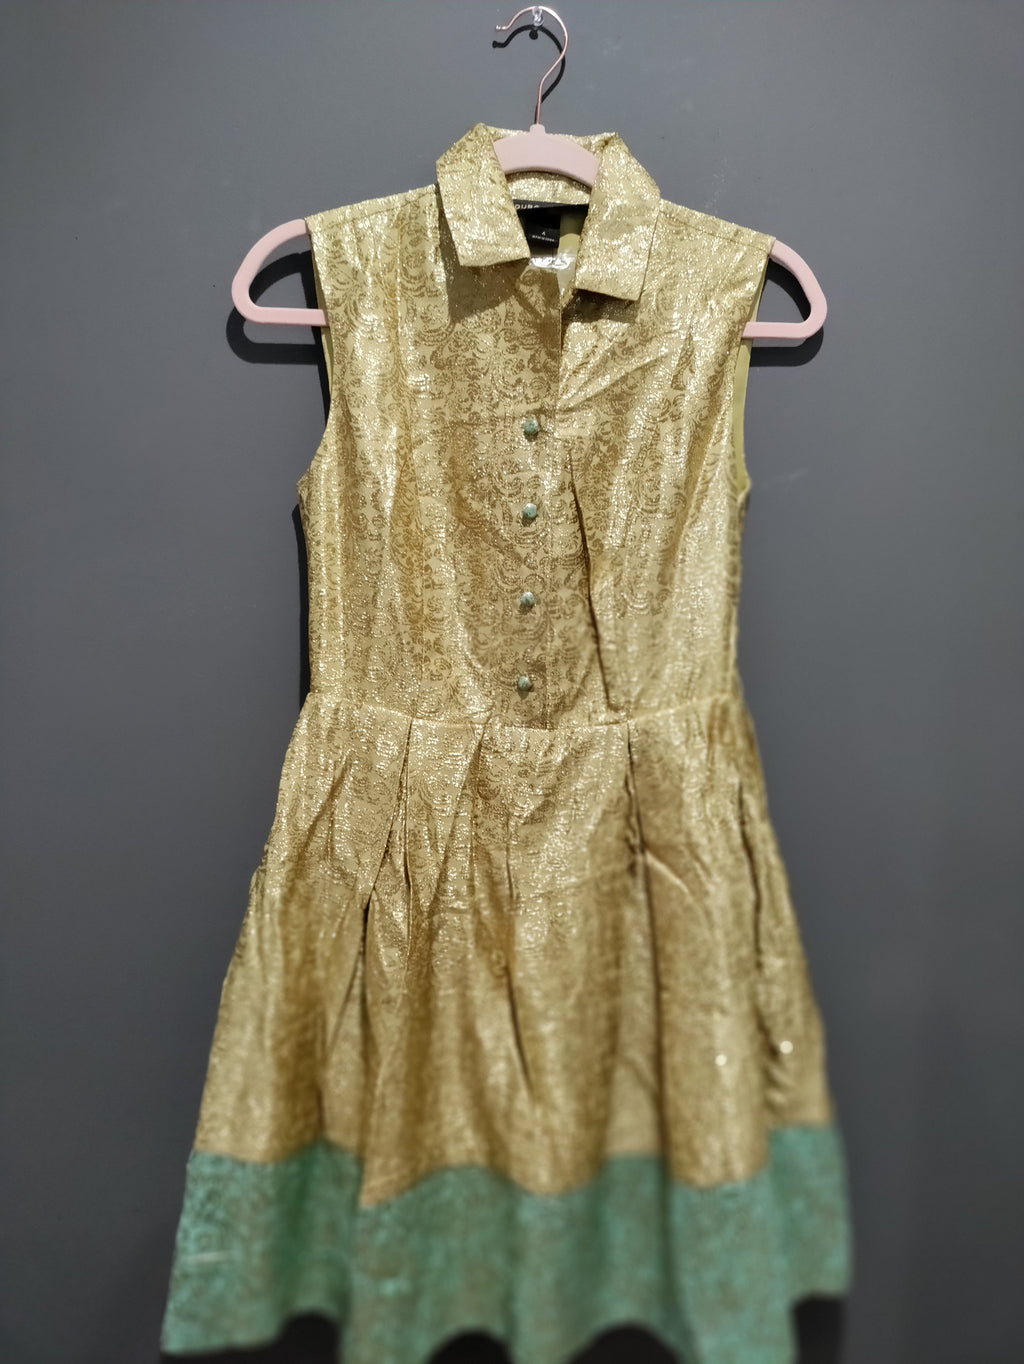 Metallic Gold and green mini dress